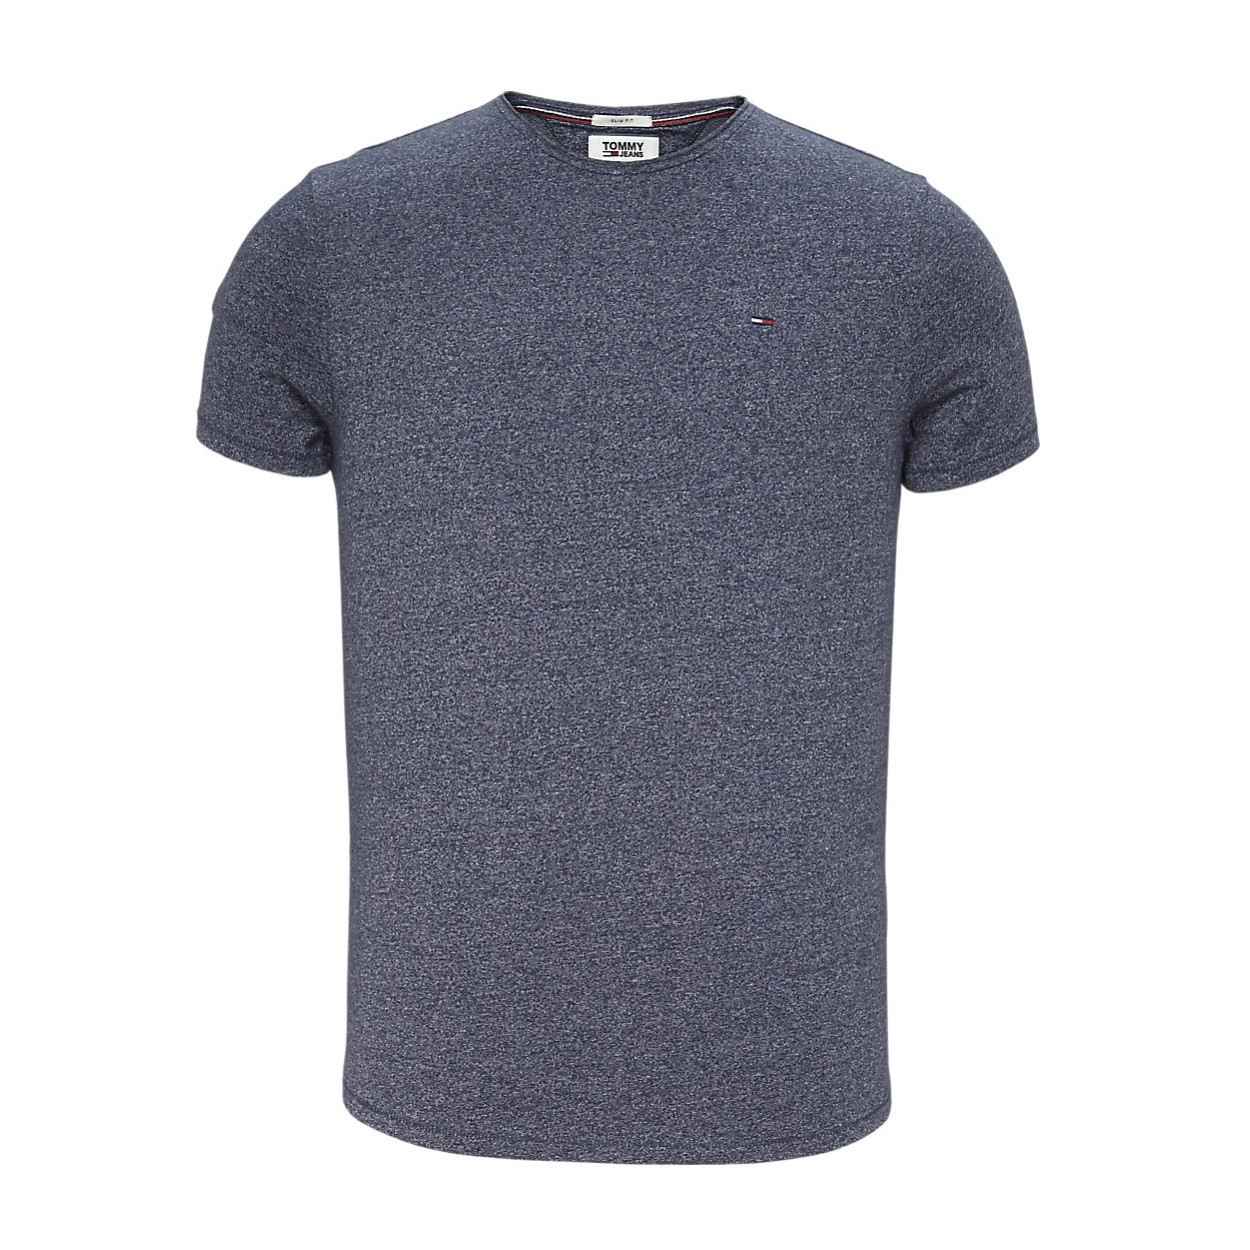 T-shirt Homme Tommy Hilfiger essential jaspe Bleu Marine chiné, Manches courtes & col rond référence DM0DM04792 002